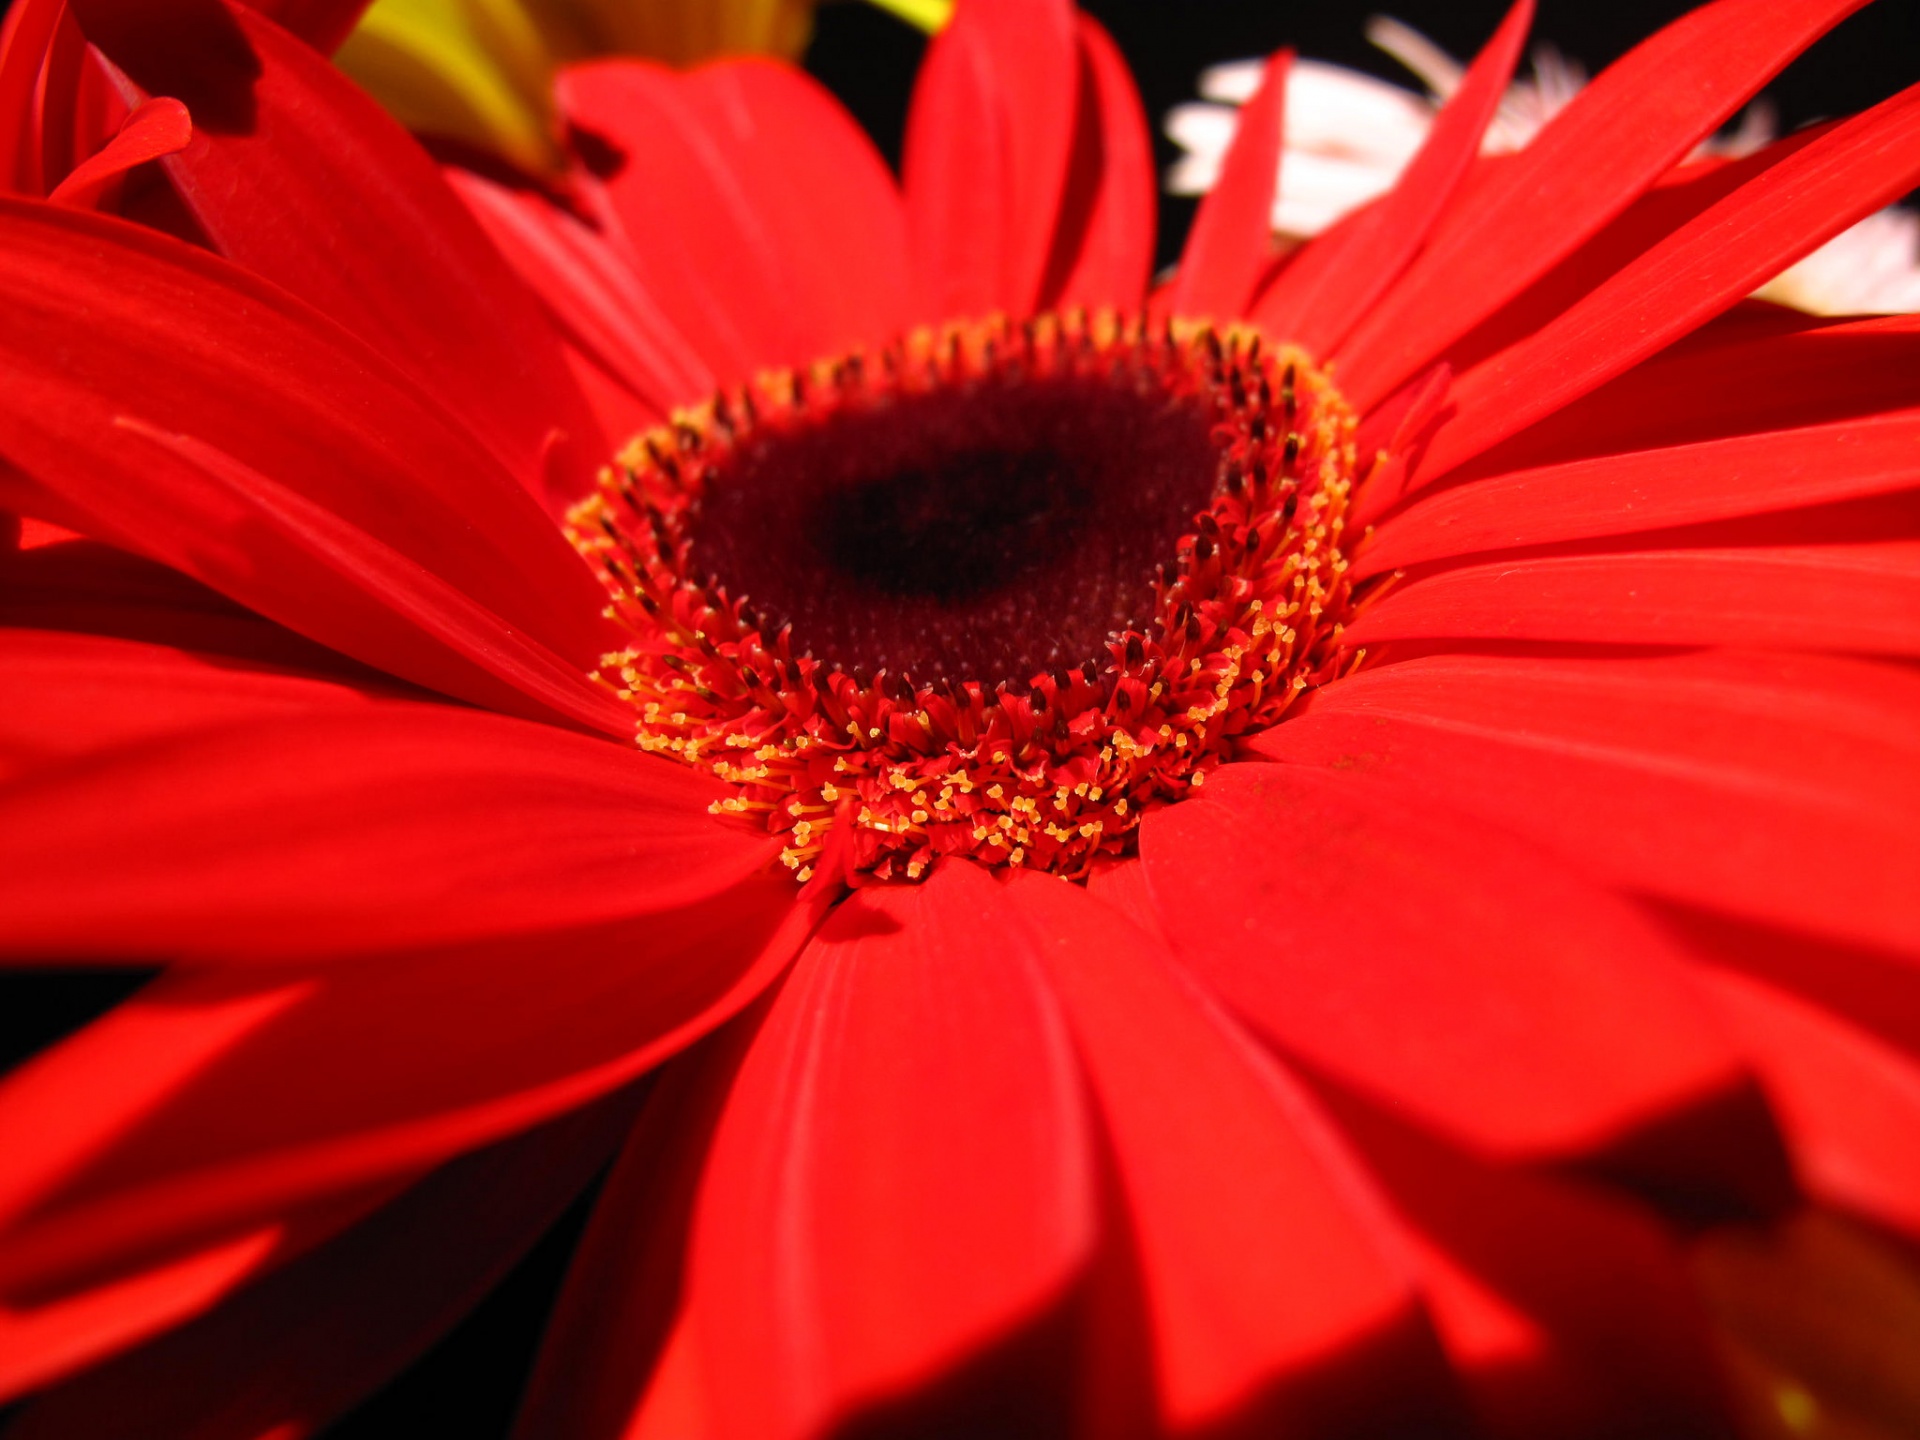 Vivid Red Flower, Gerbera